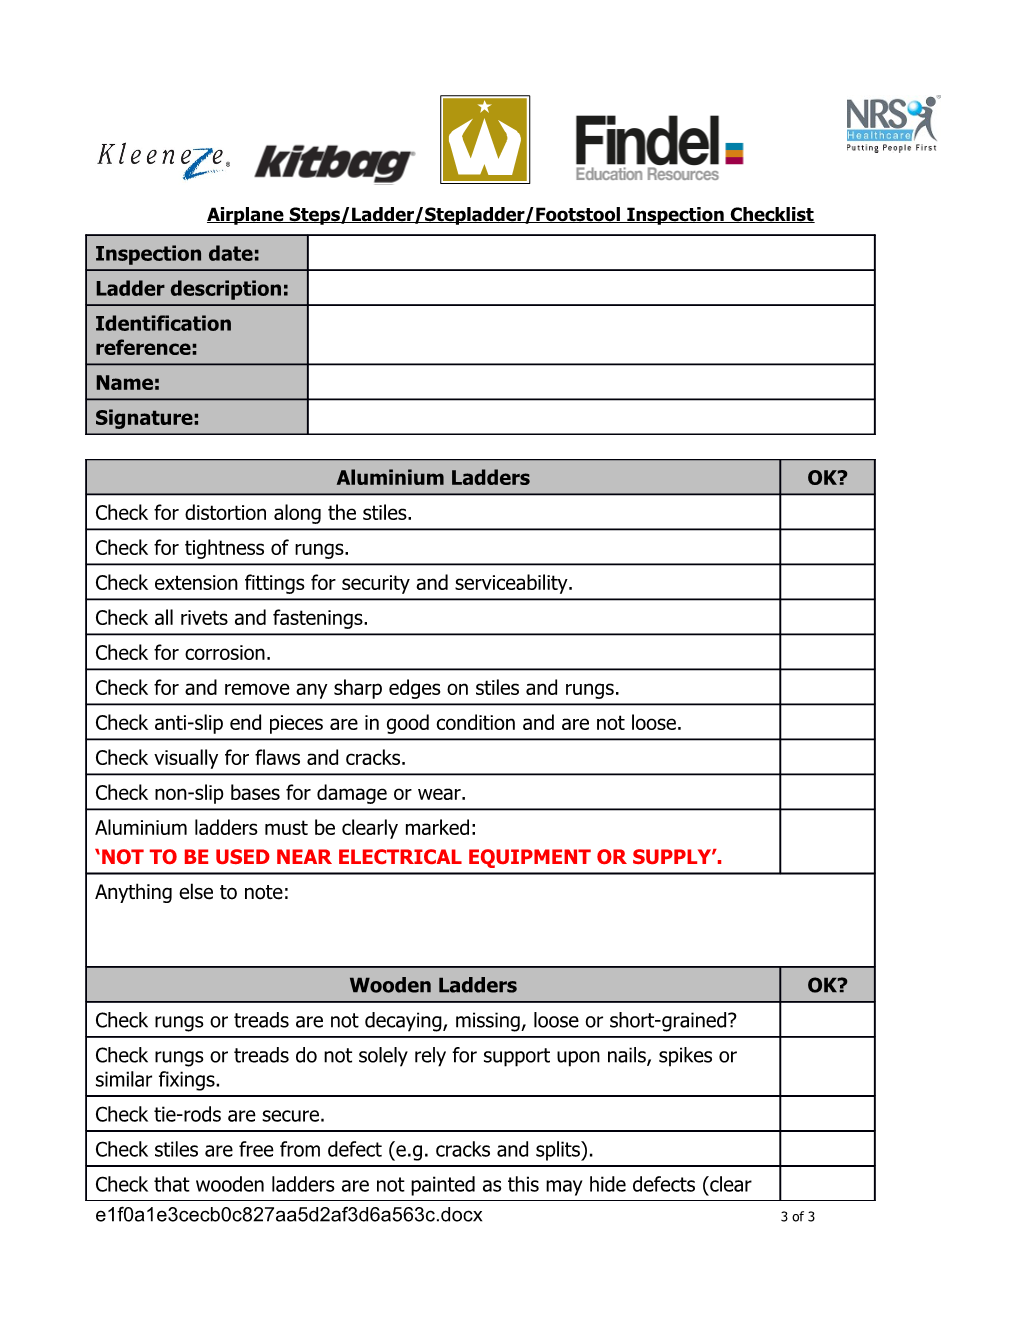 Ladder/Stepladder Inspection Checklist